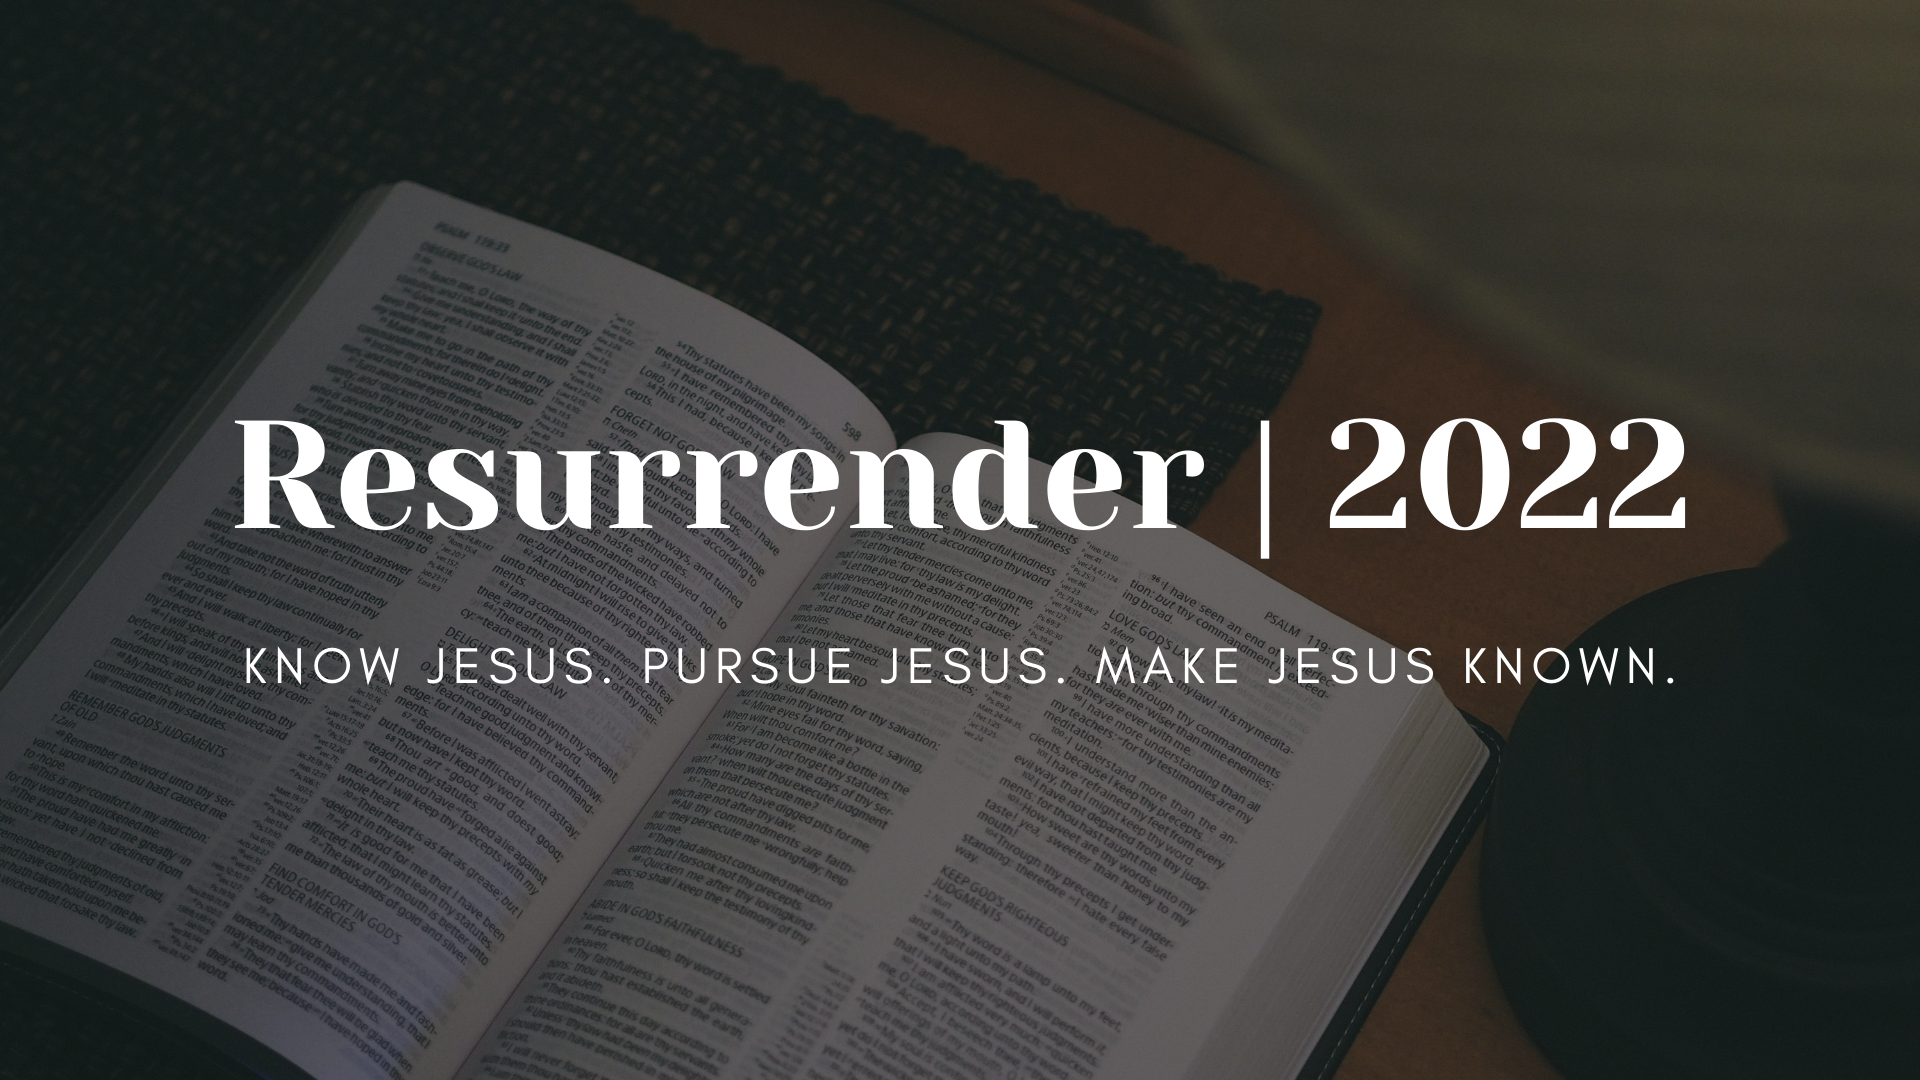 Resurrender 2022 | Know Jesus, Pursue Jesus, Make Jesus Known banner